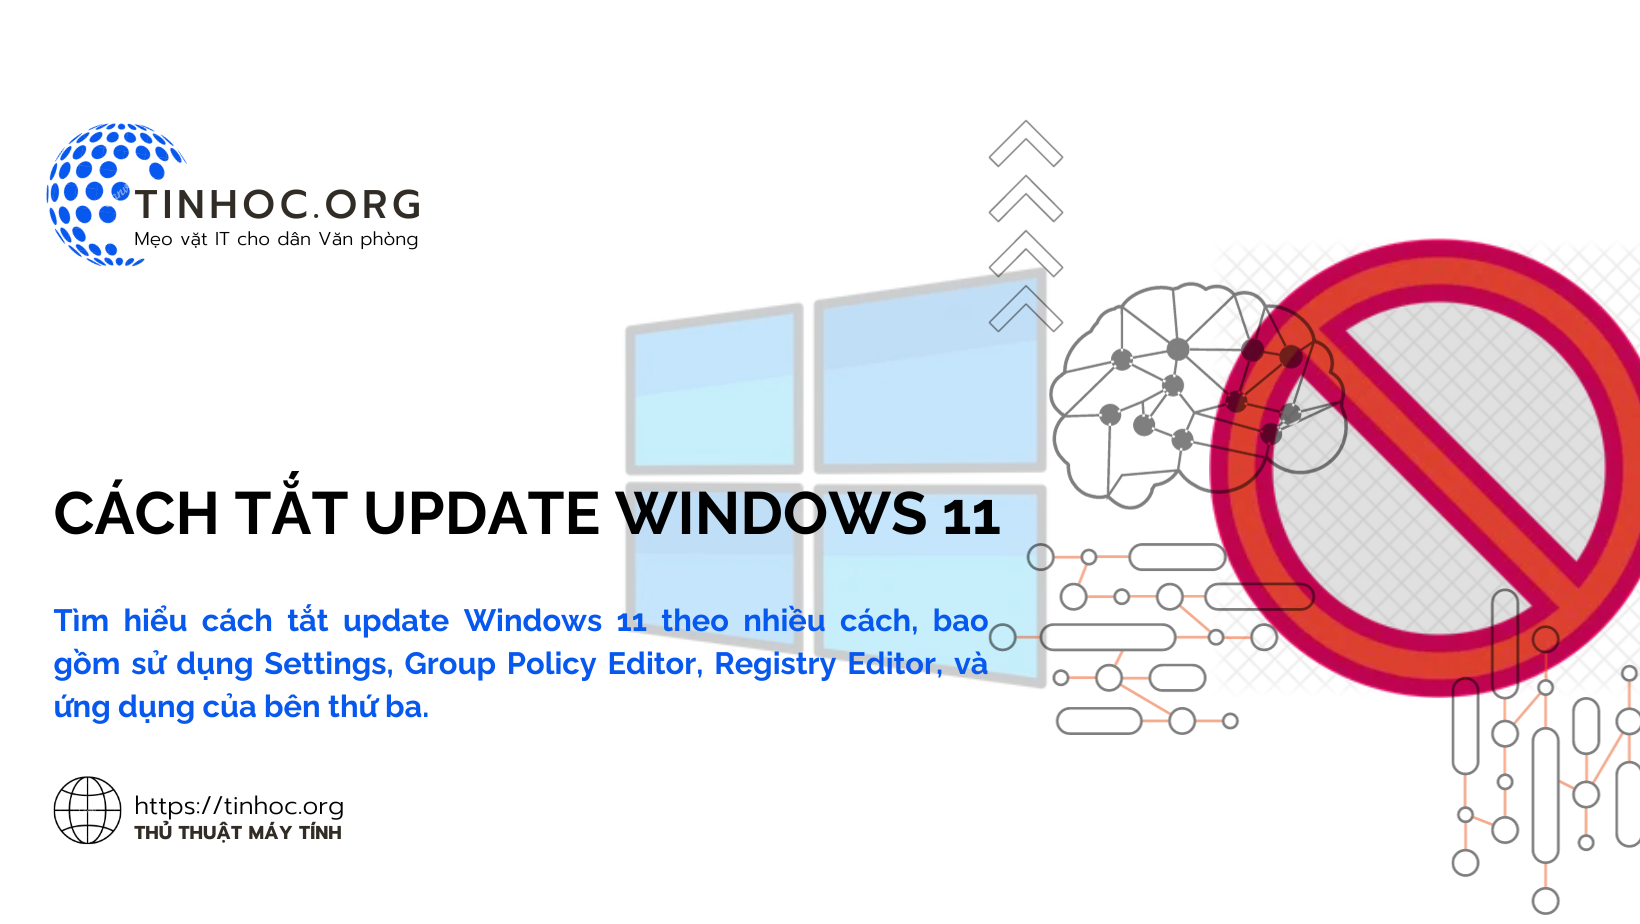 Tìm hiểu cách tắt update Windows 11 theo nhiều cách, bao gồm sử dụng Settings, Group Policy Editor, Registry Editor, và ứng dụng của bên thứ ba.